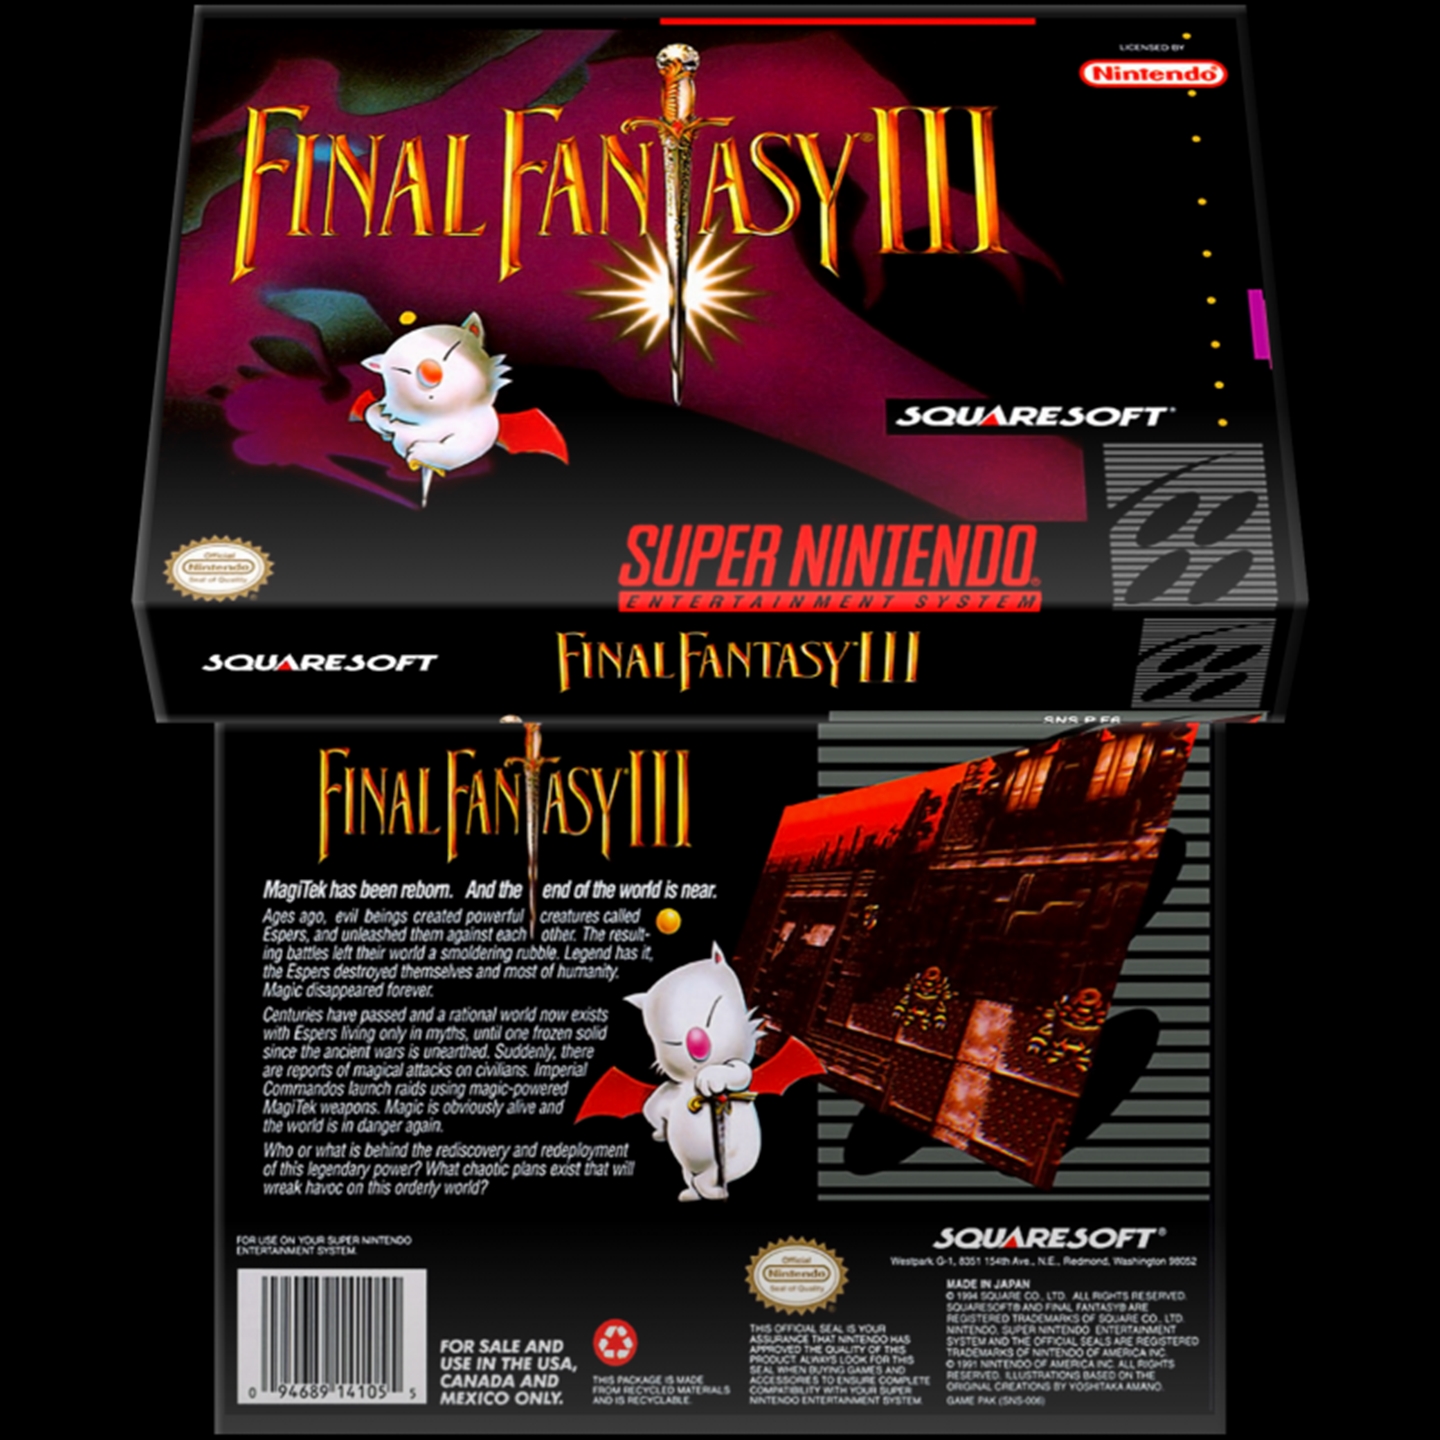 Cartucho norte-americano de Final Fantasy III (ou VI).